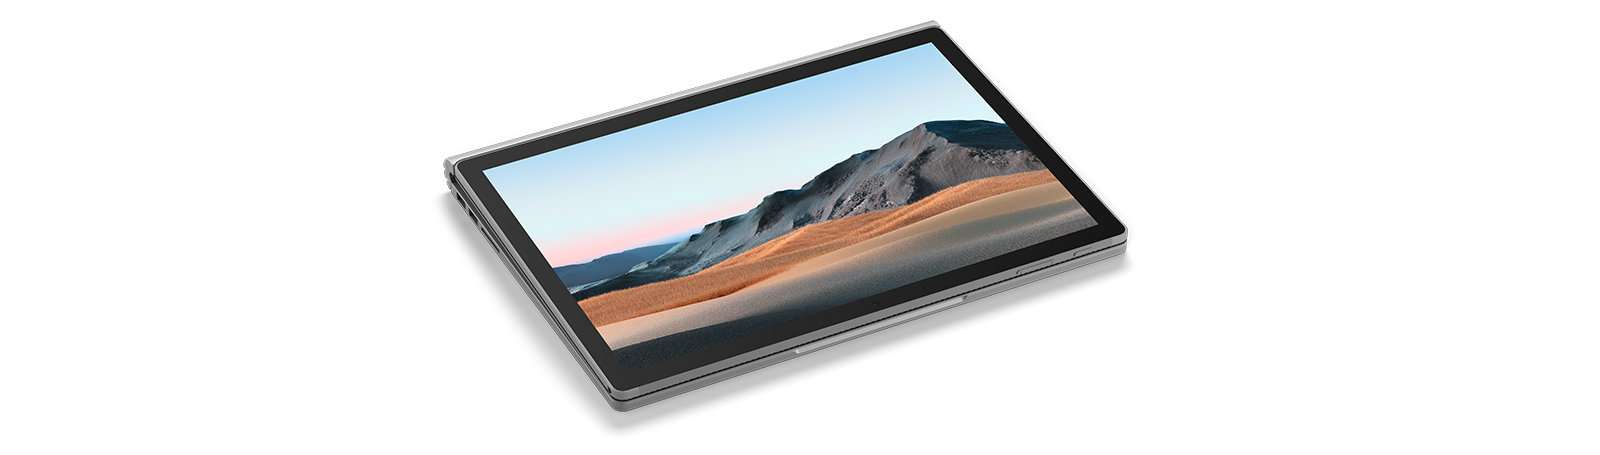 Un computer Surface Book 3 per le aziende disteso con lo schermo a vista